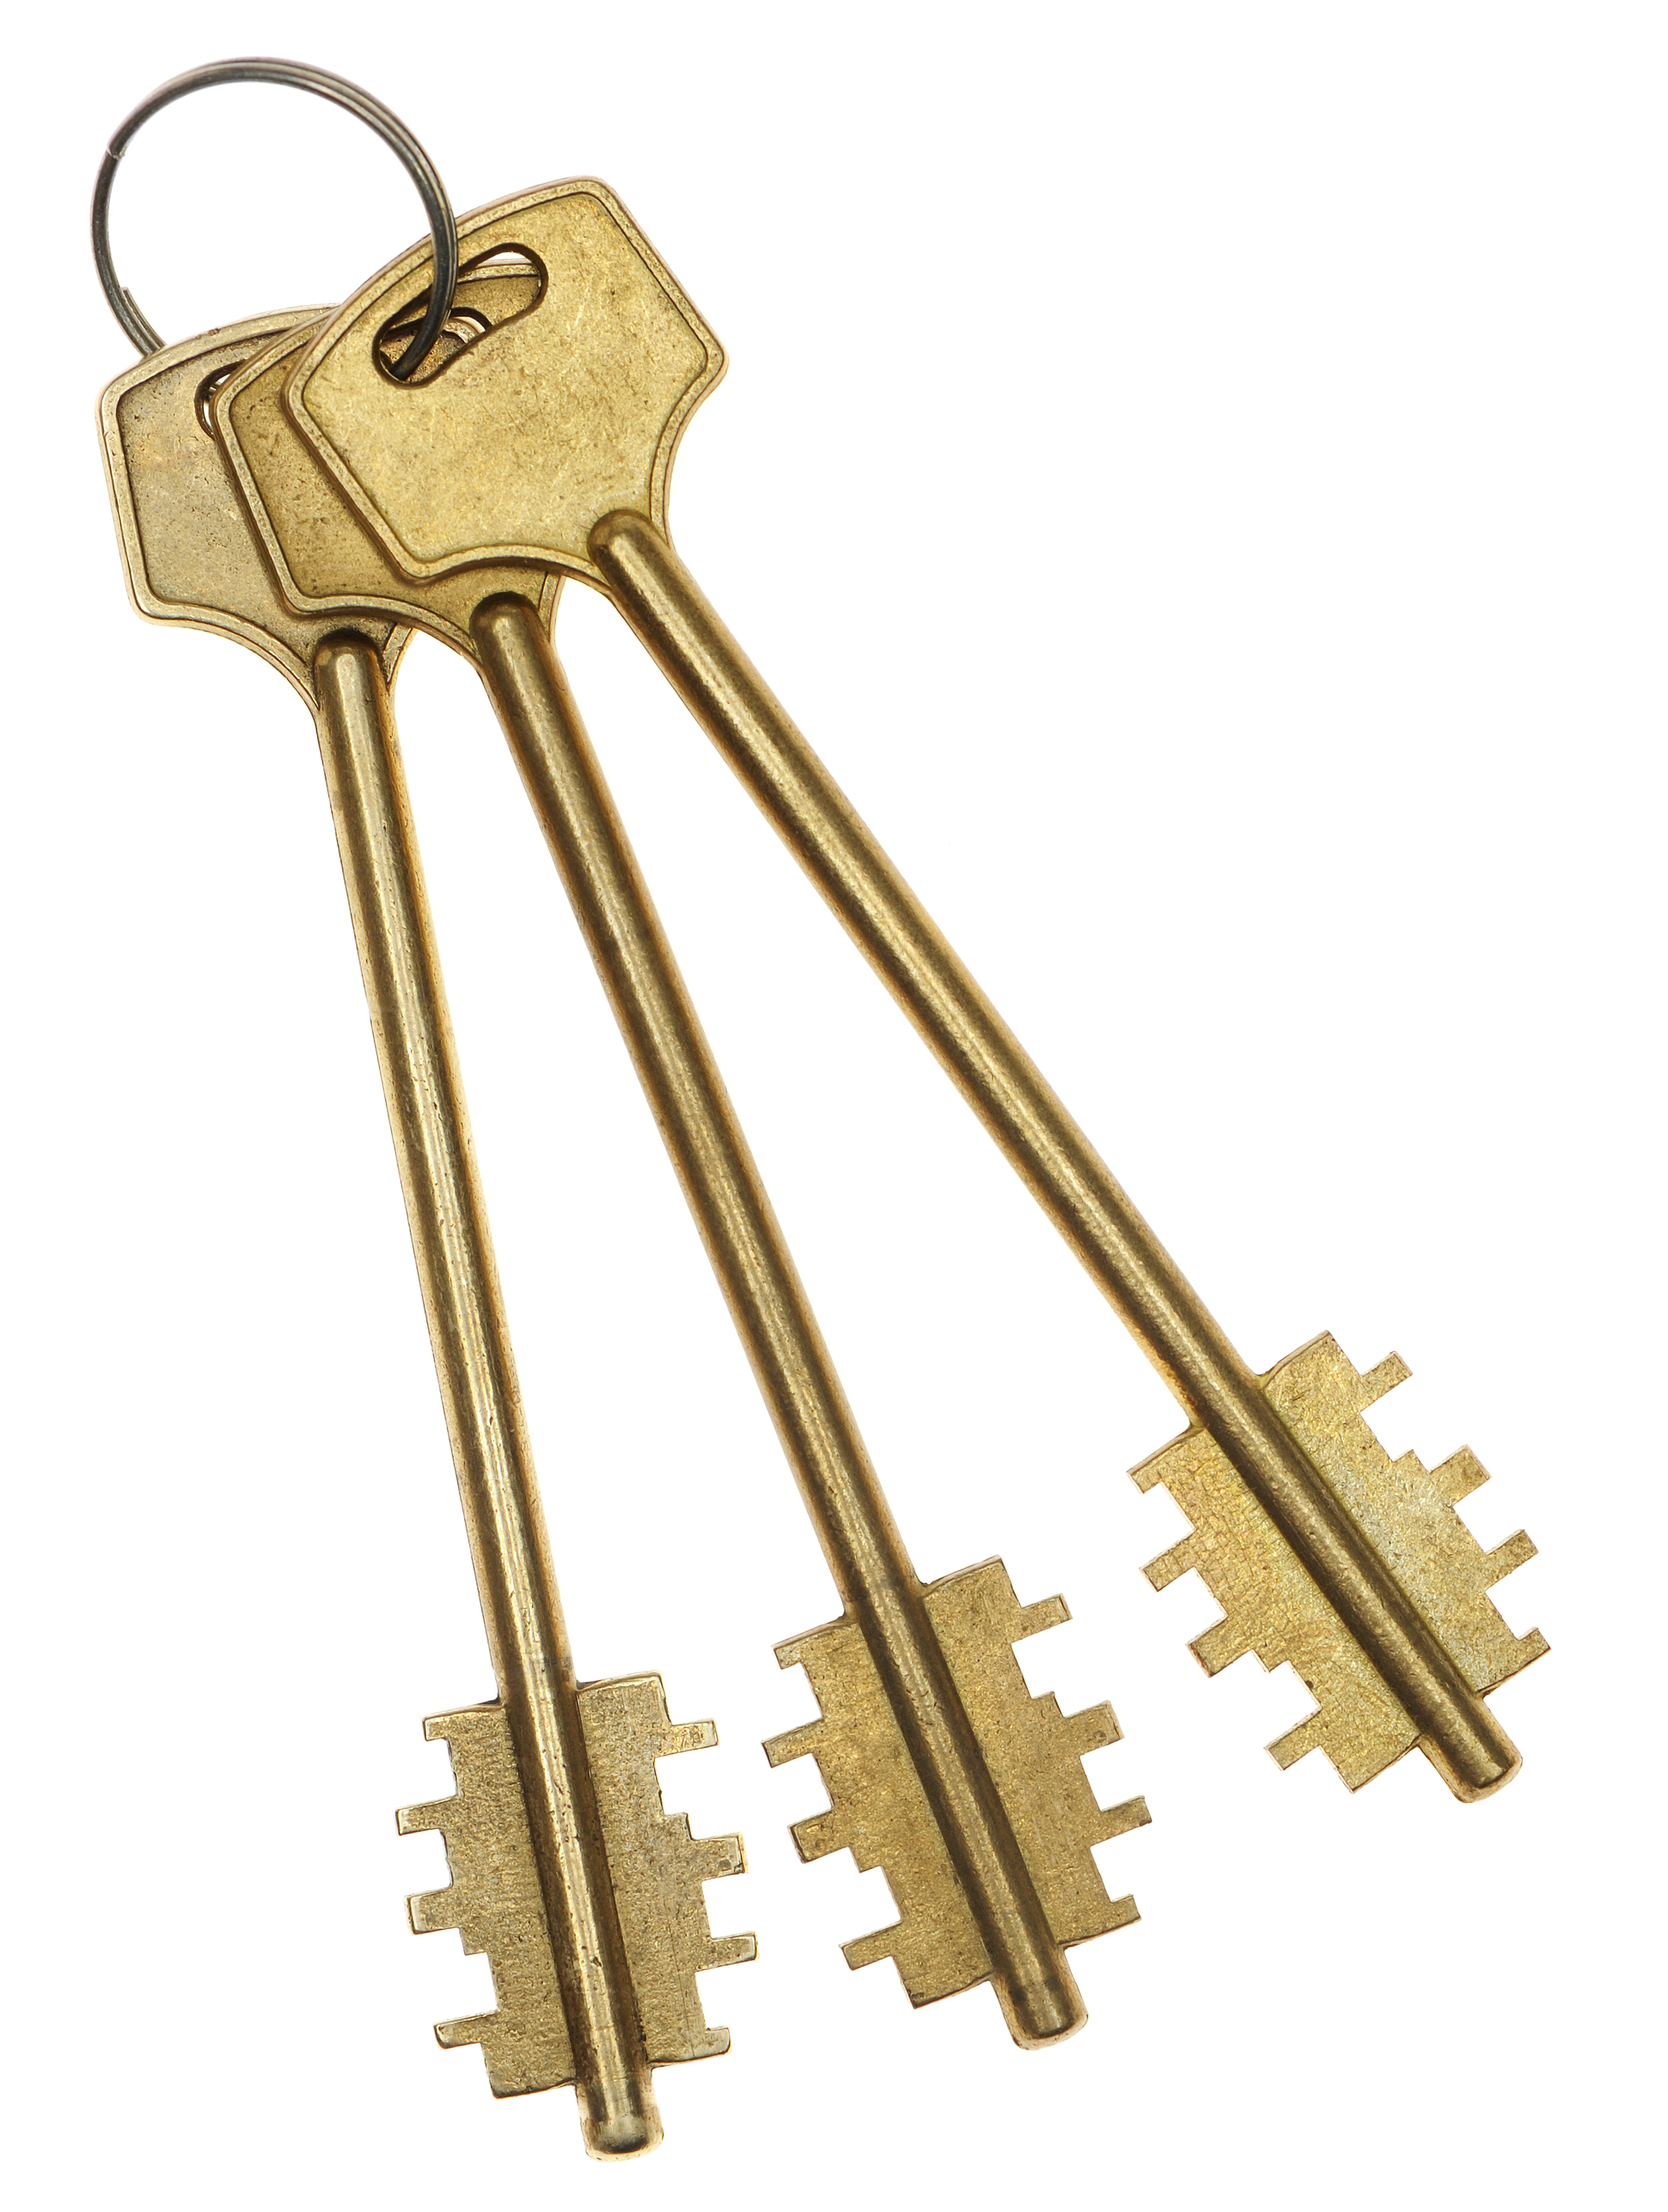 Ключ из желтого металла